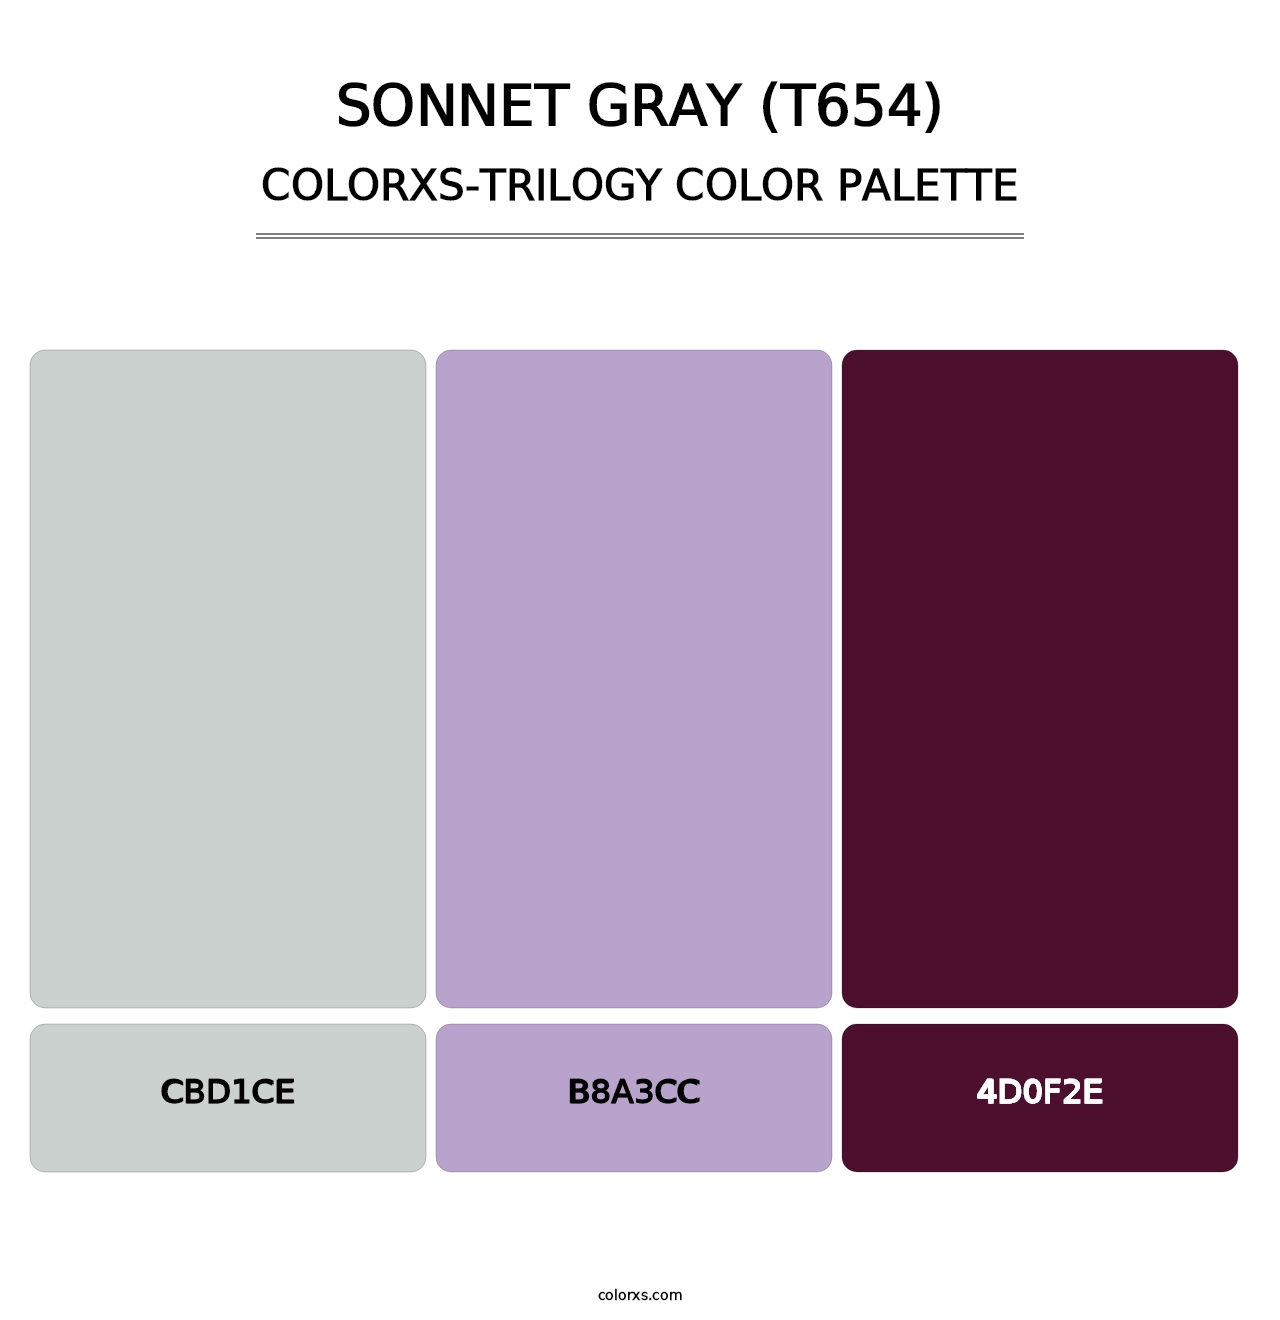 Sonnet Gray (T654) - Colorxs Trilogy Palette